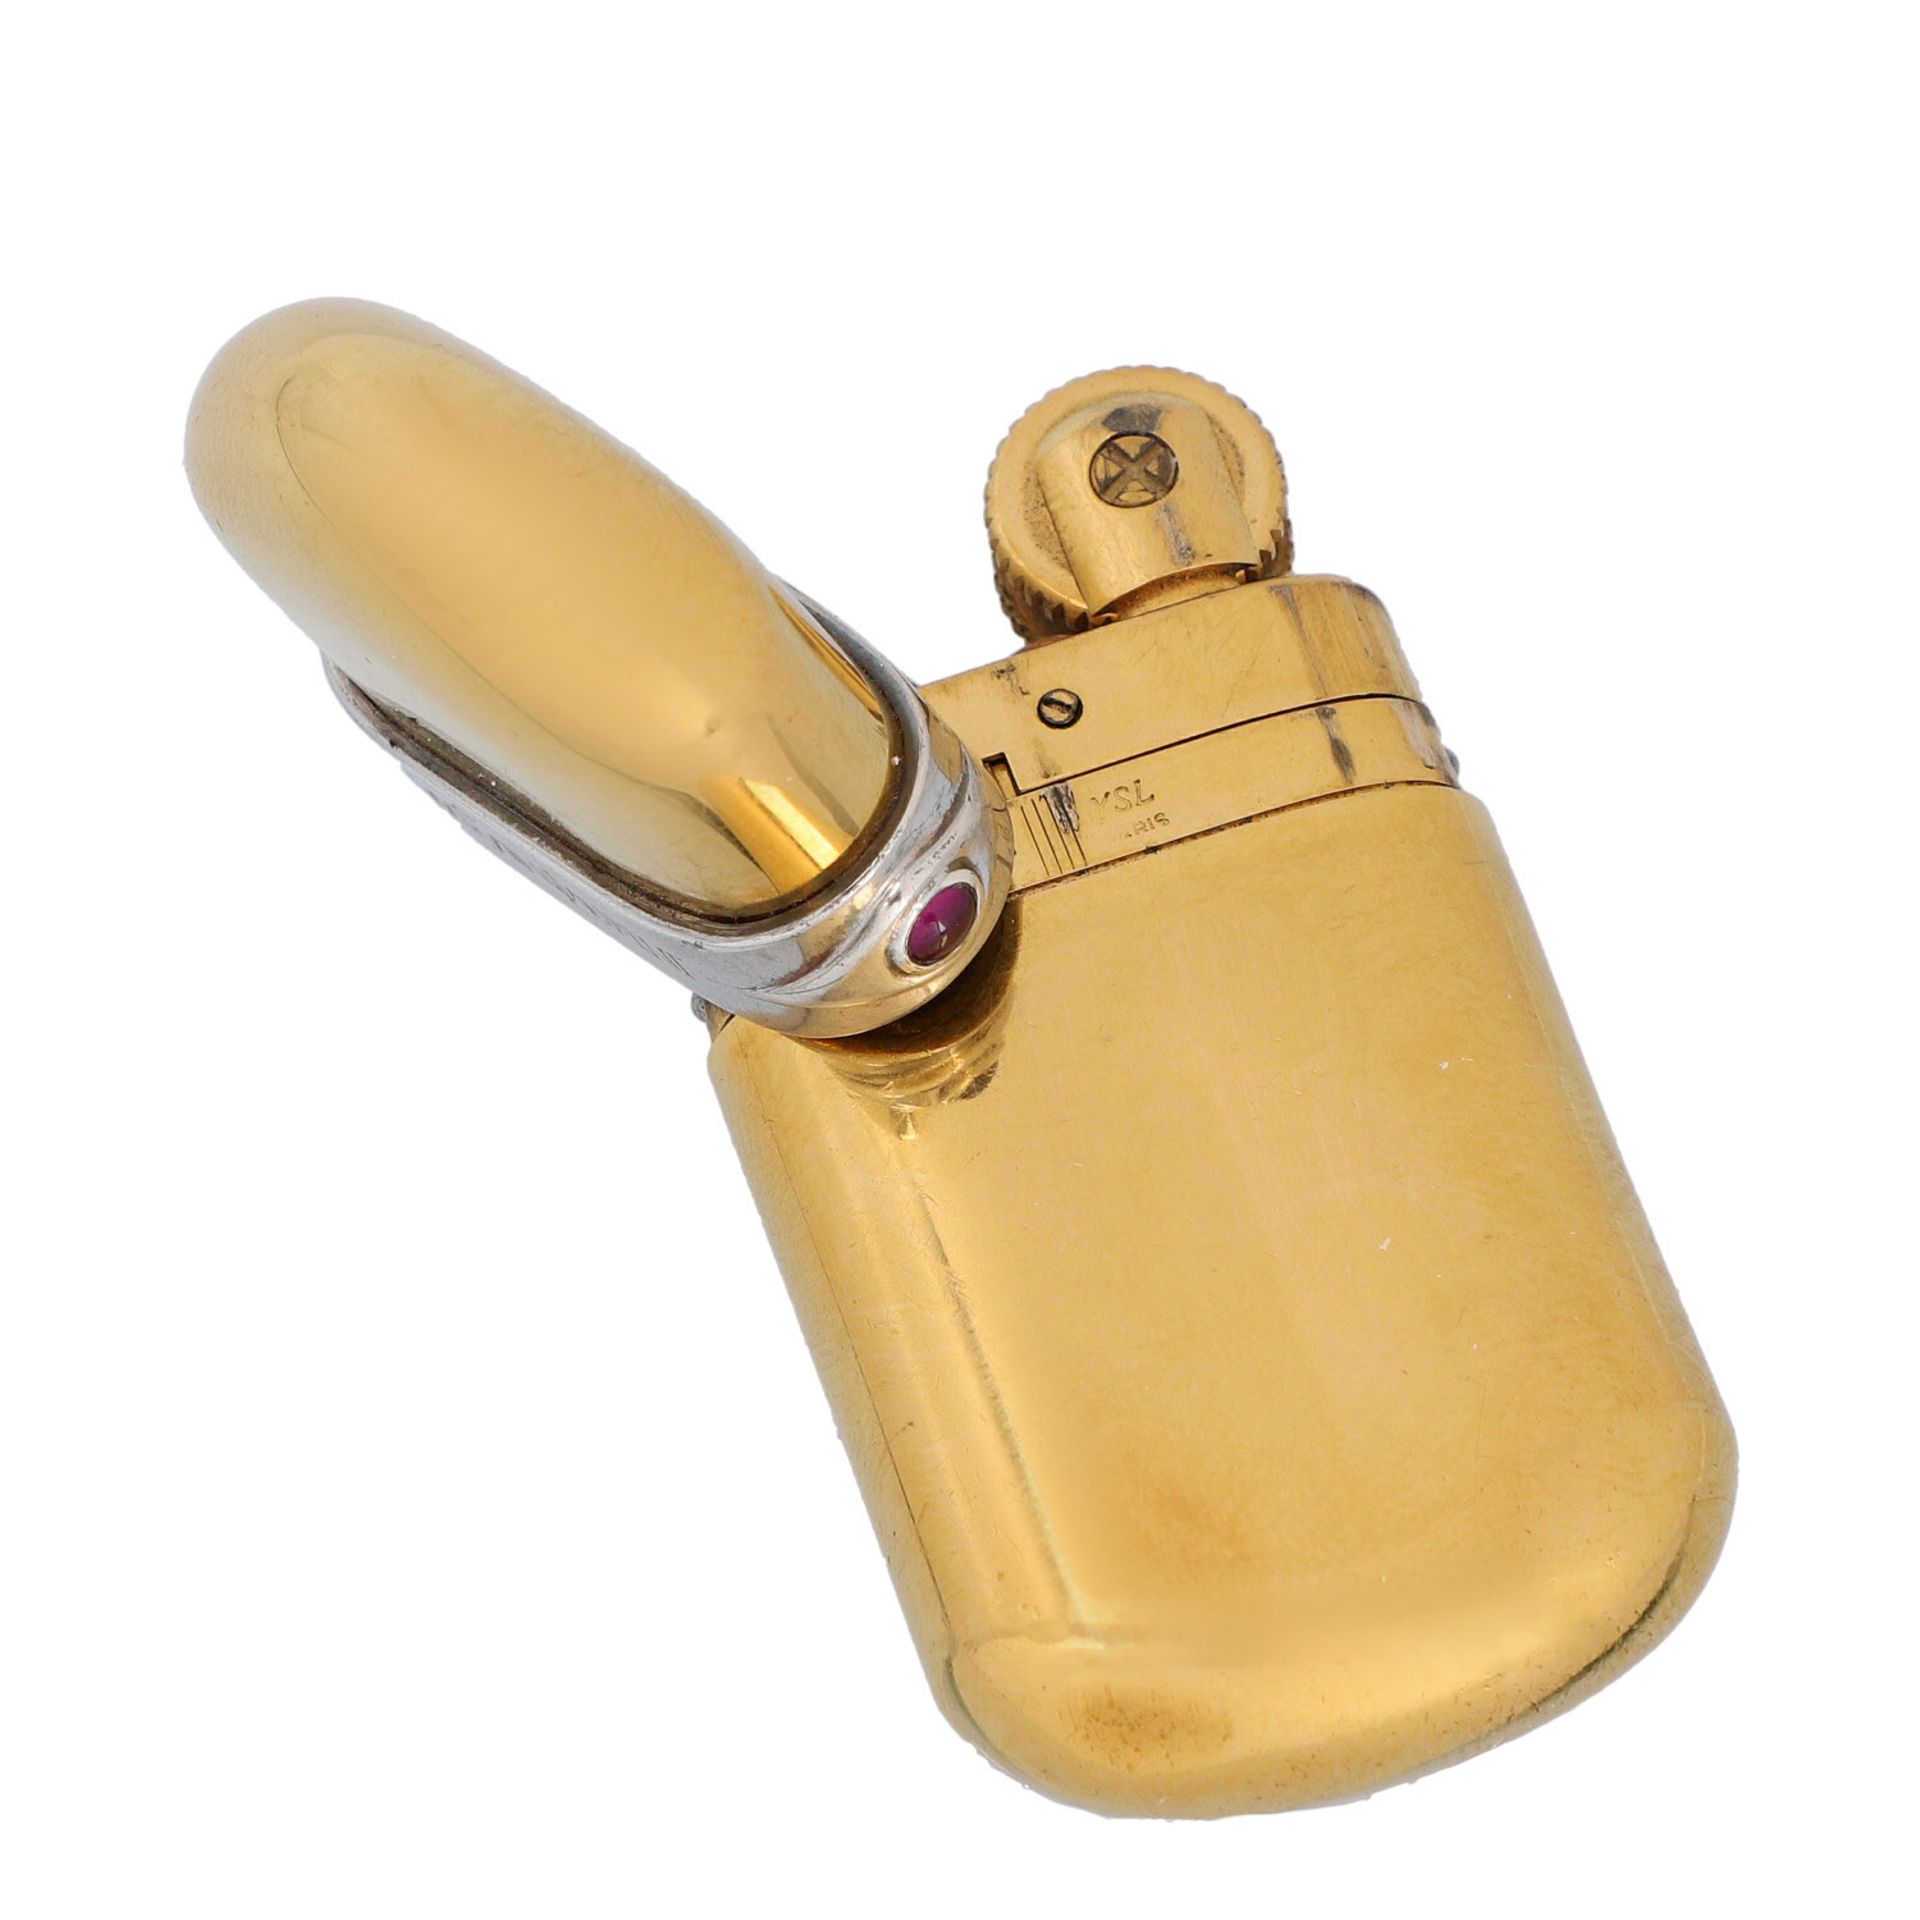 YVES SAINT LAURENT VINTAGE Feuerzeug.Goldfarbenes Modell mit silberfarbenem Logo-Detai - Bild 4 aus 4